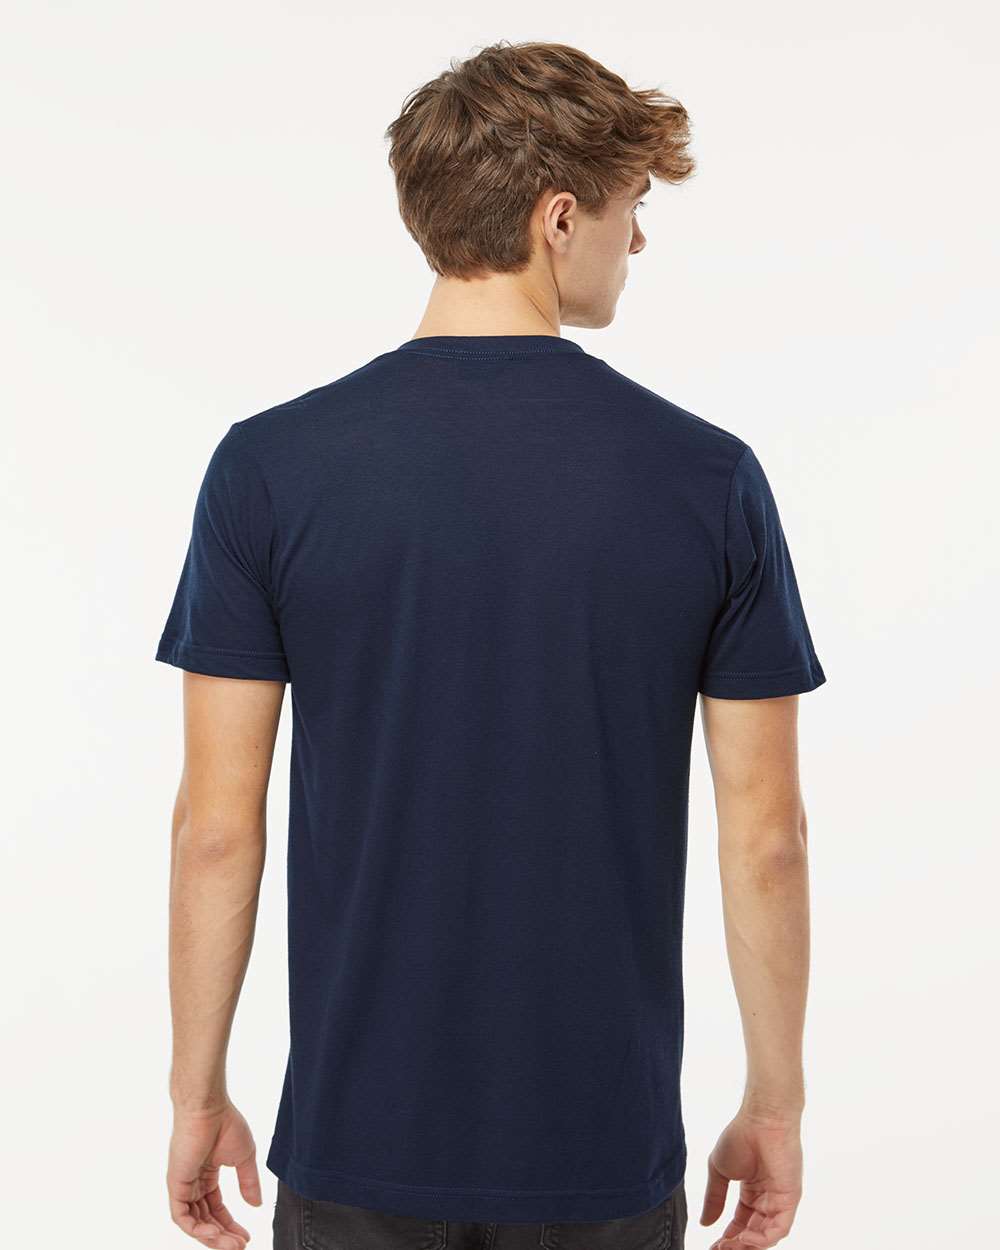 M&O Deluxe Blend V-Neck T-Shirt 3543 #colormdl_Navy